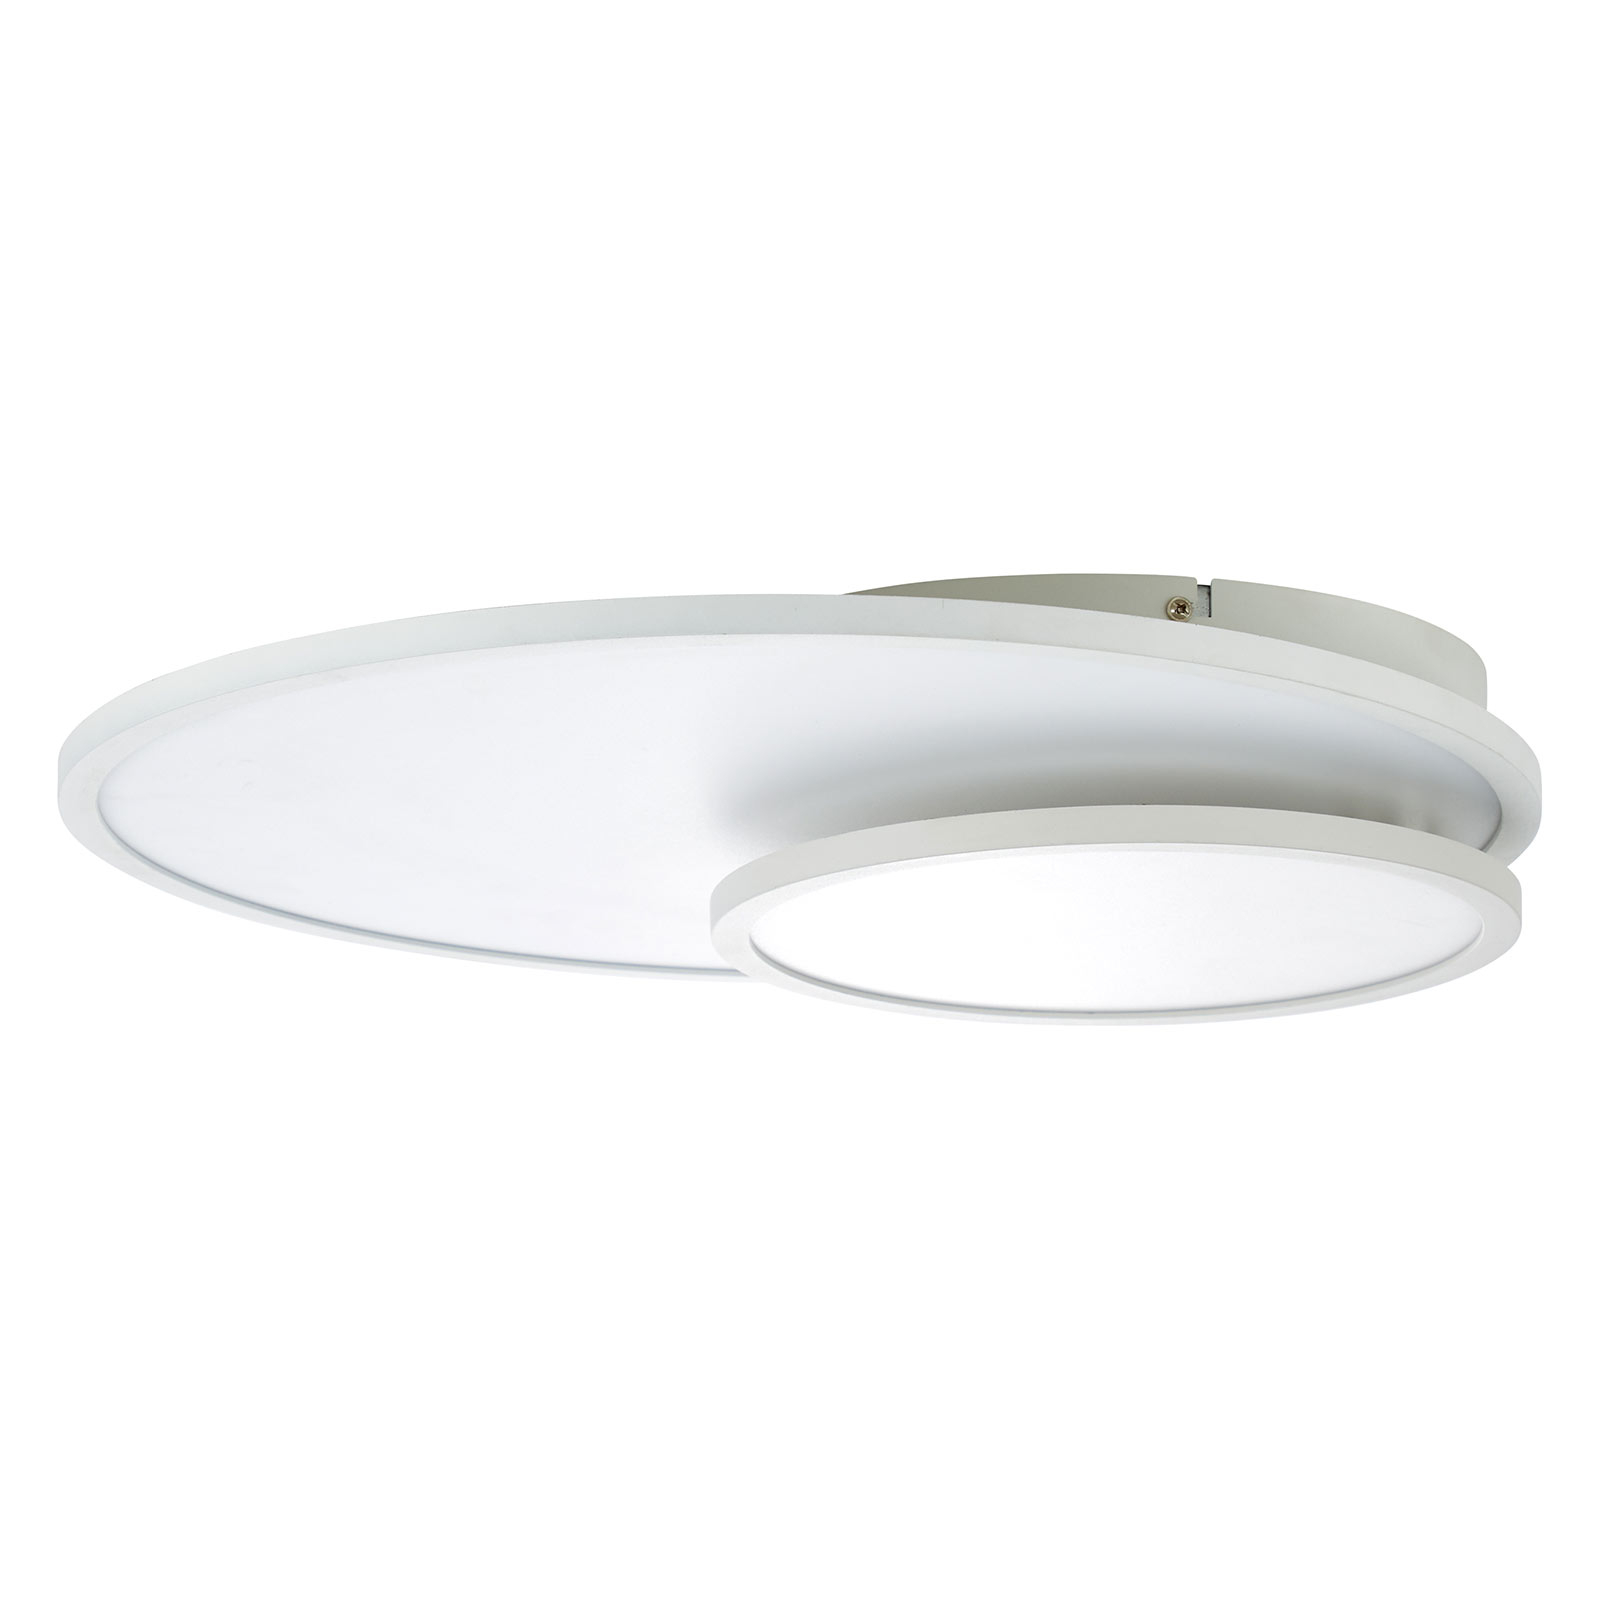 LED ceiling lamp Bility, round, white framework